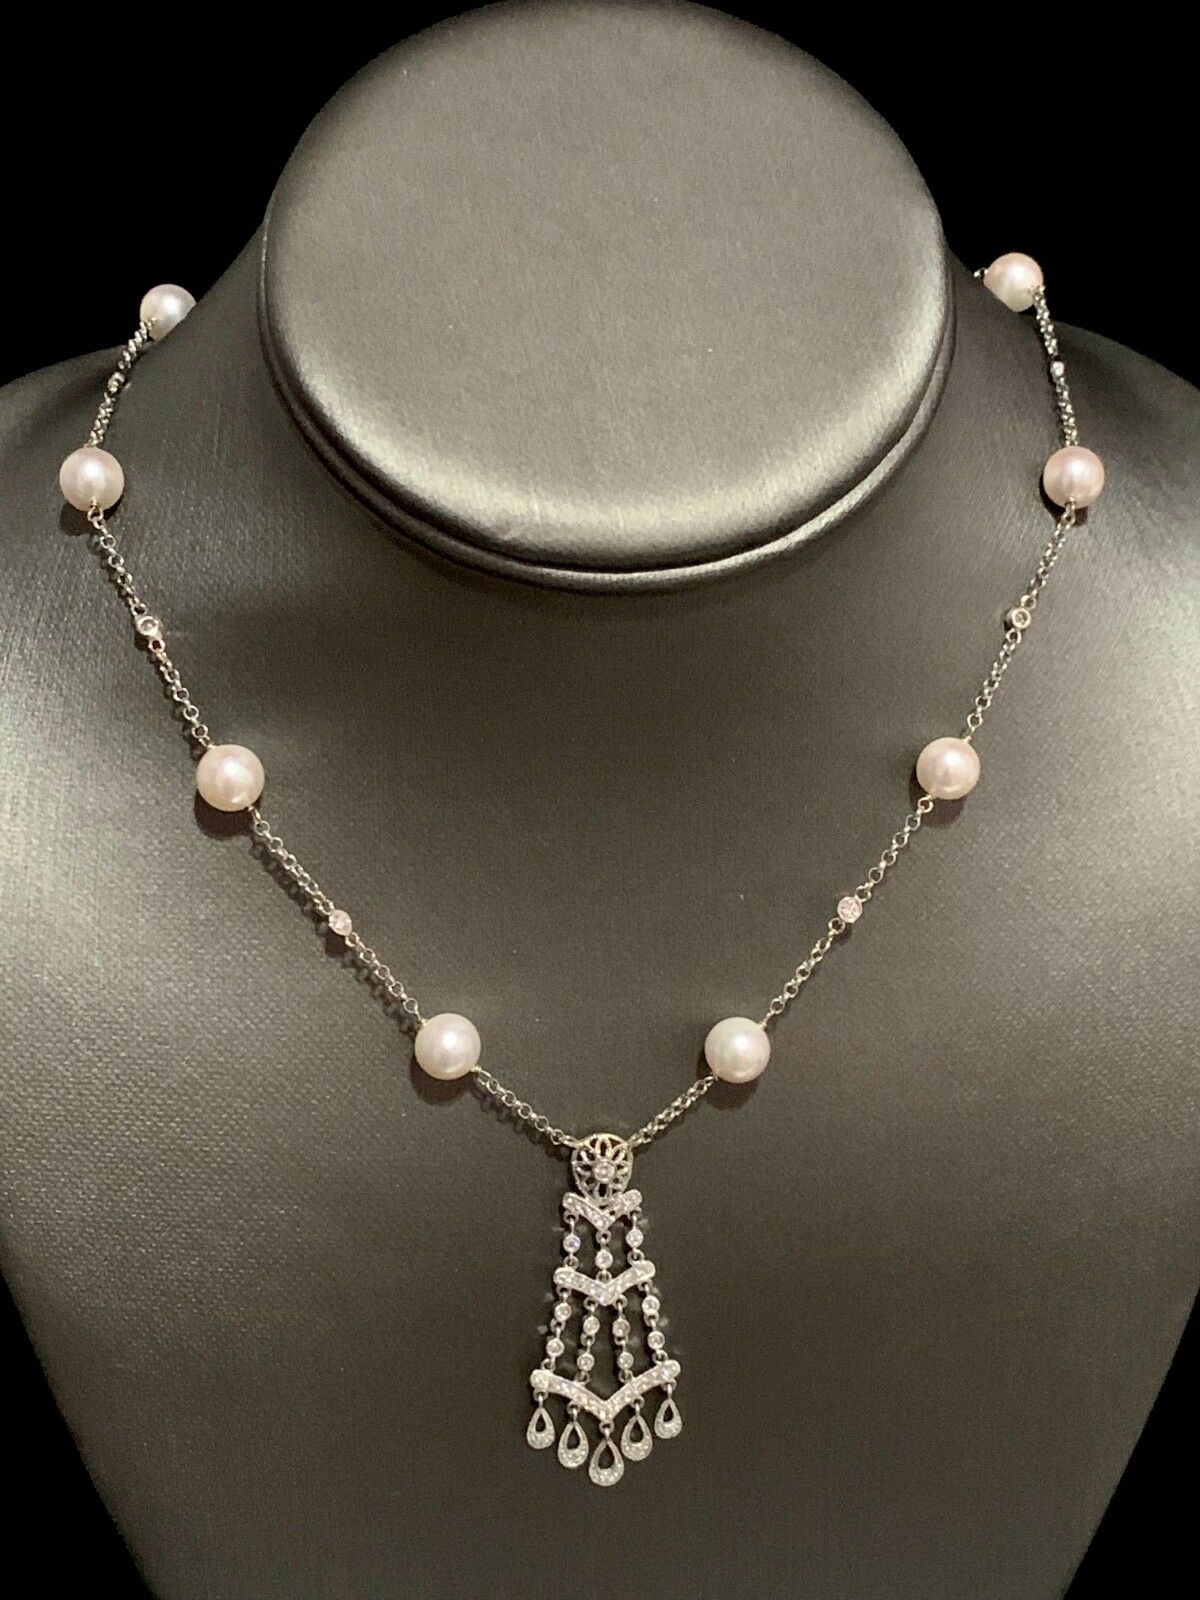 Akoya Pearl Necklace 14k Gold 8 mm 23.25" Women Certified $5,450 818173 - Certified Estate Jewelry